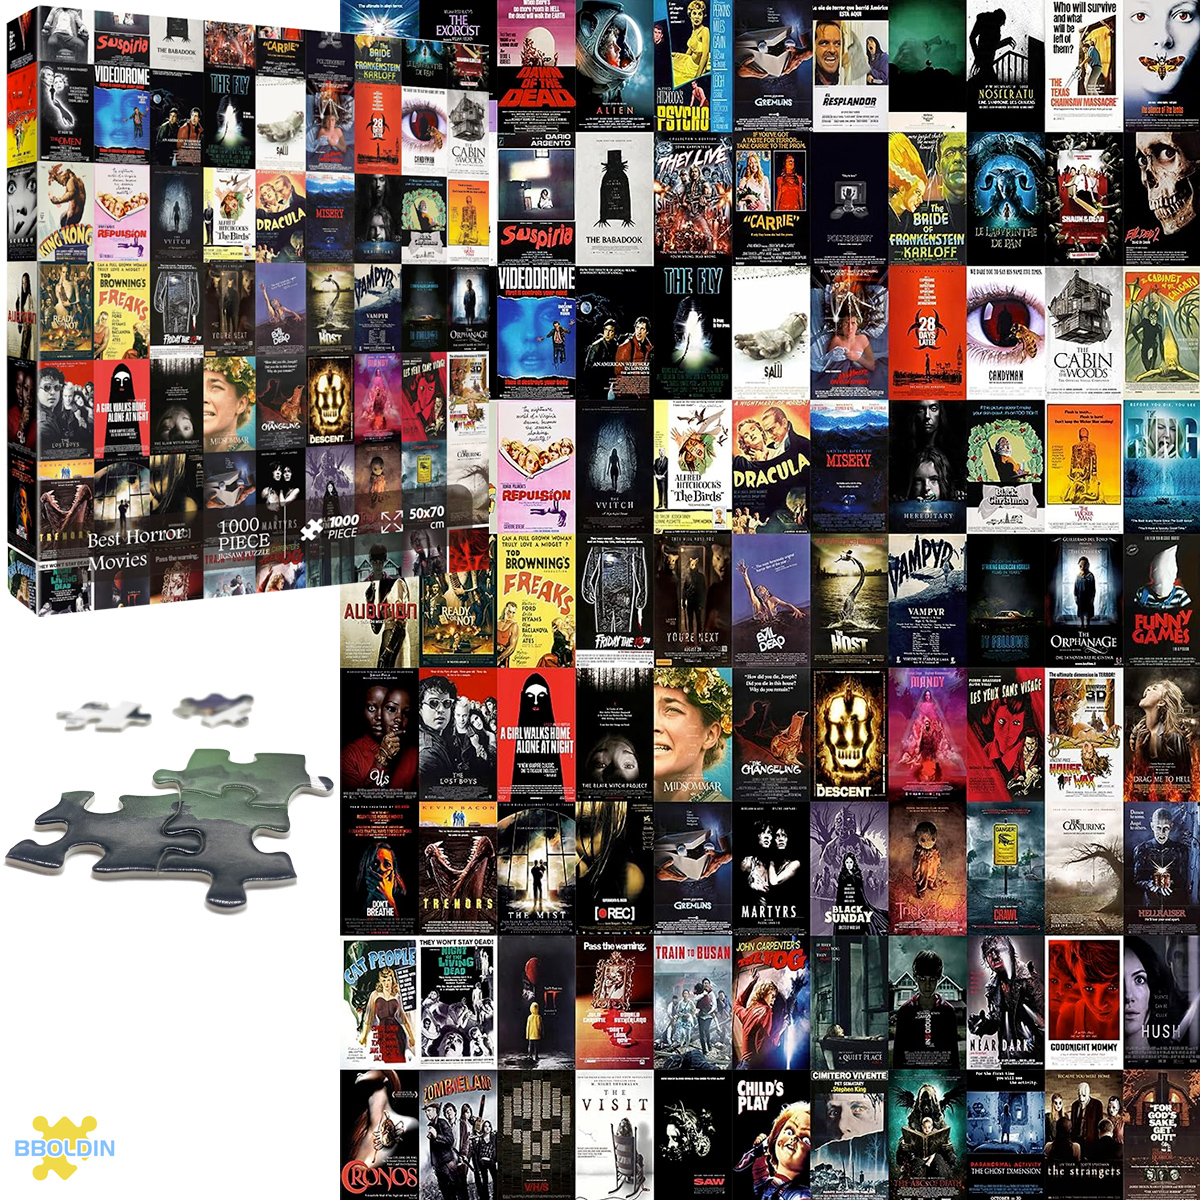 Quebra-Cabeça Best Horror Movies Collage com 1.000 peças